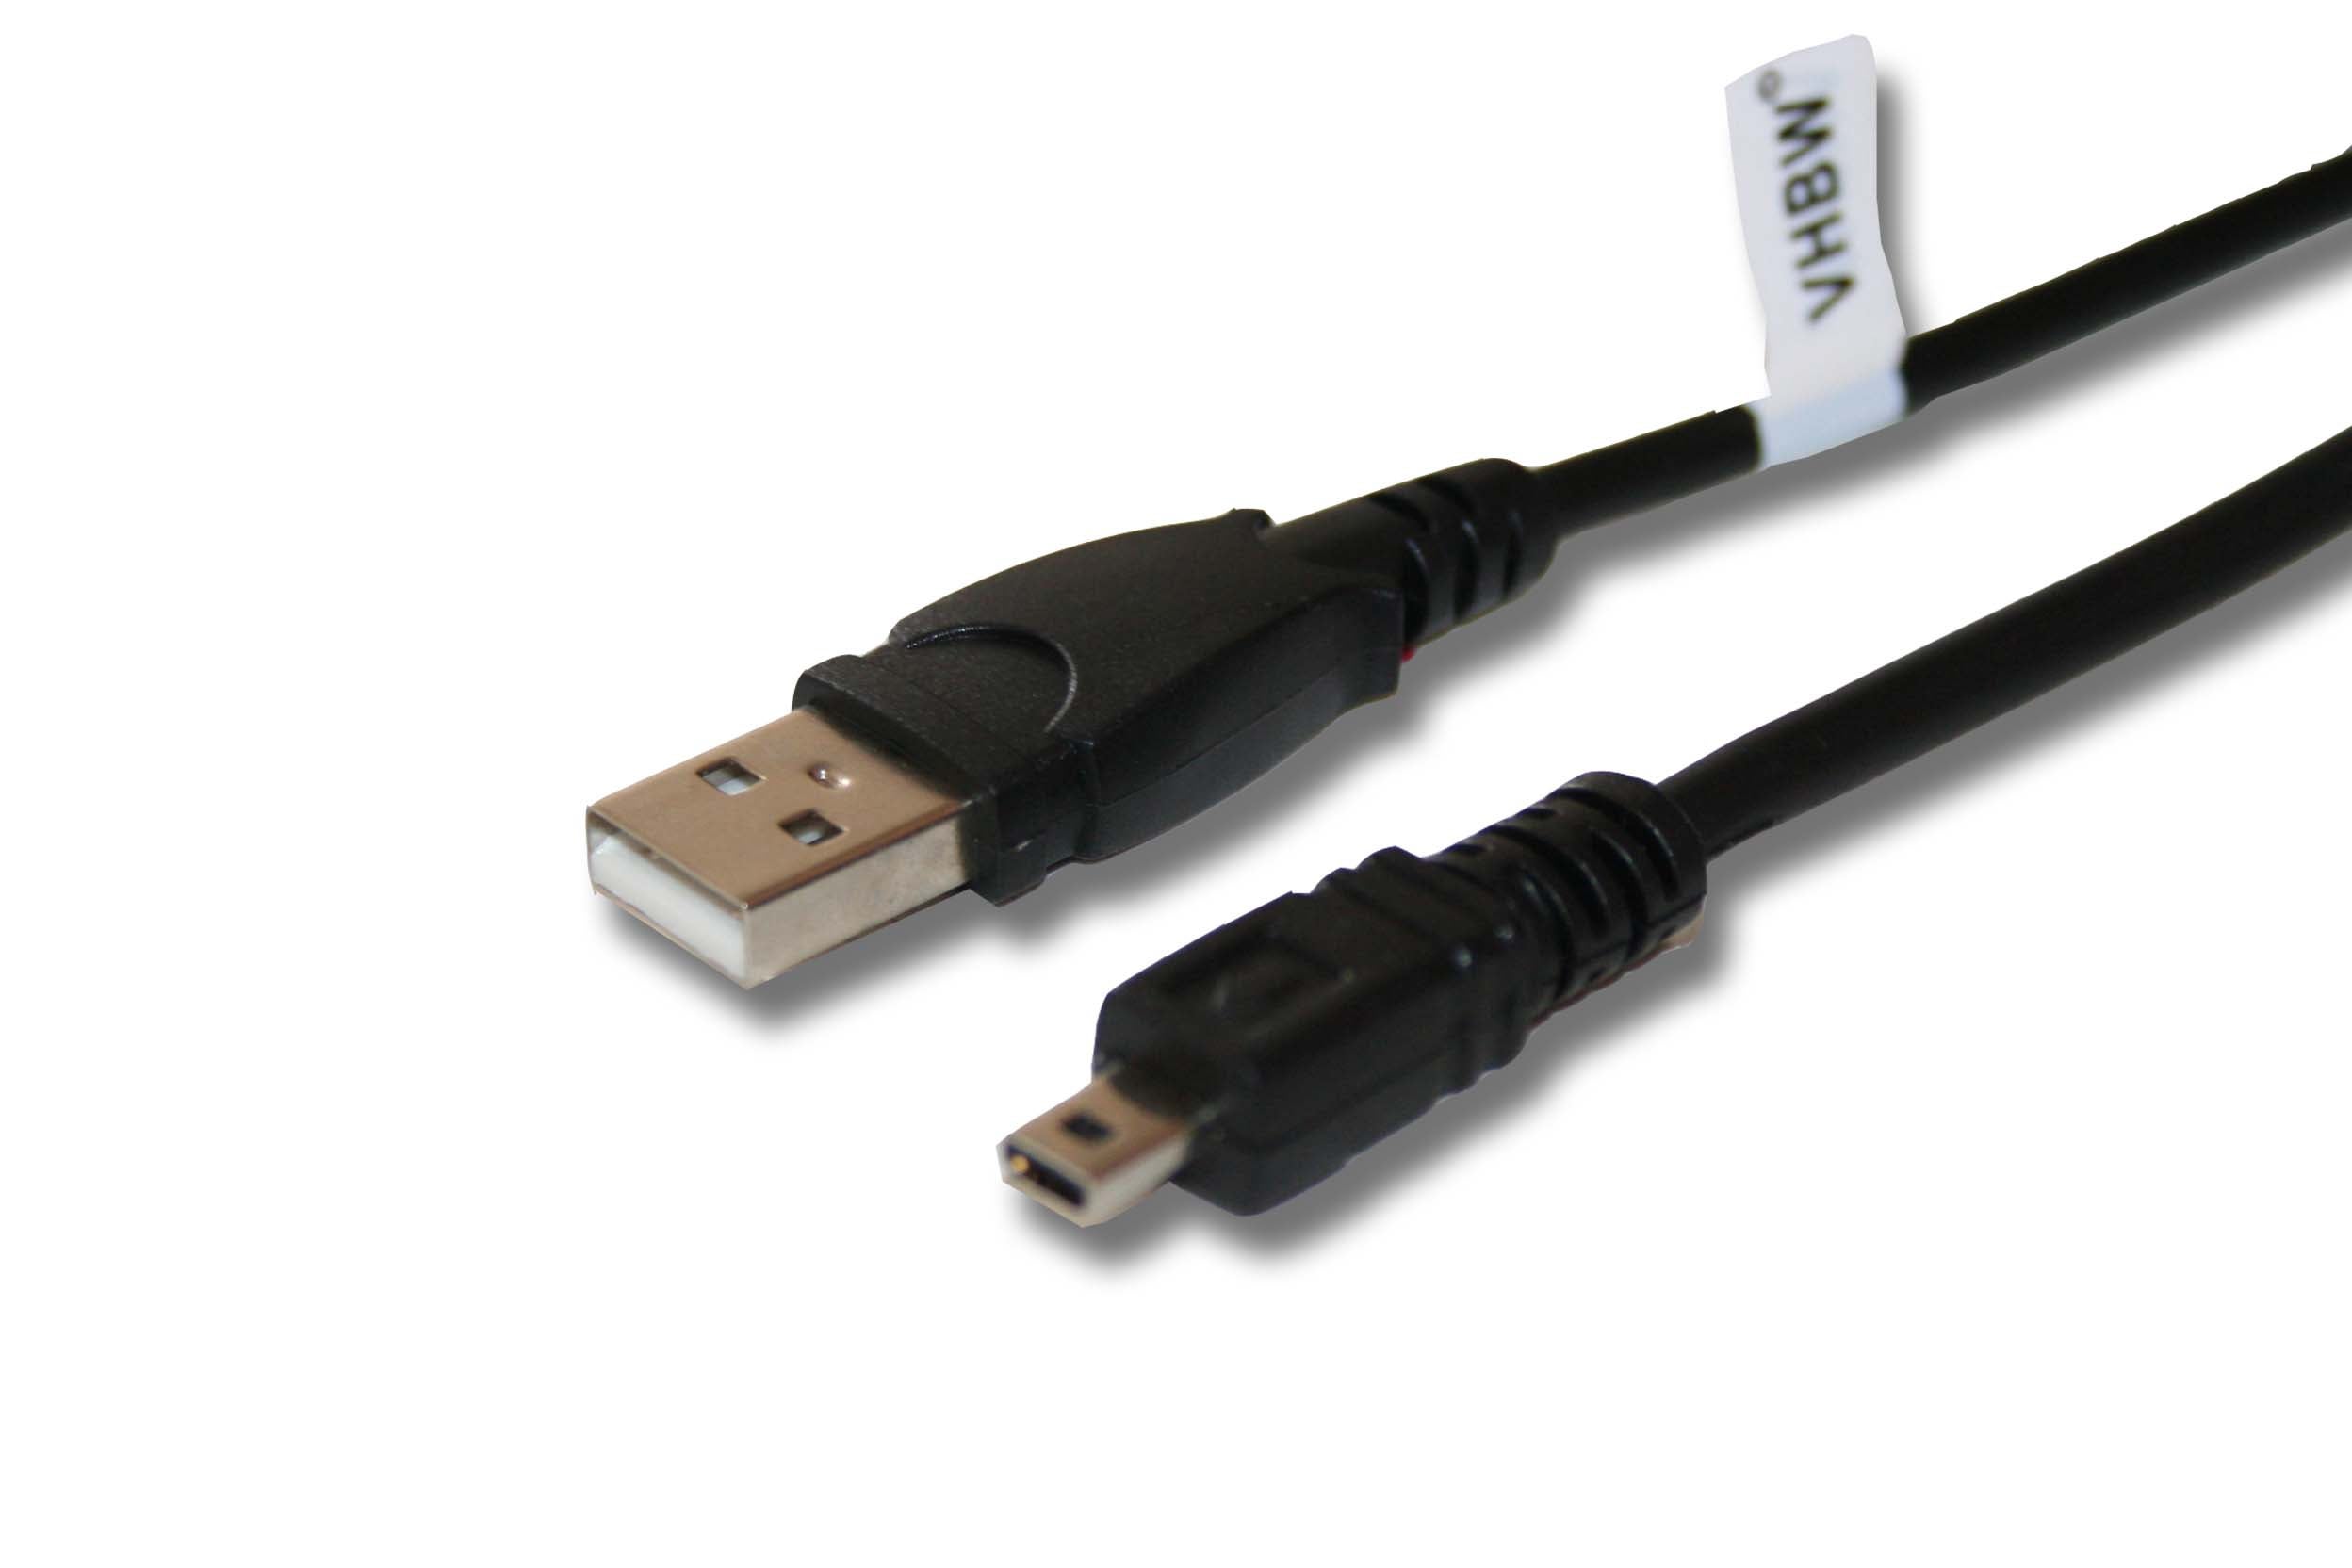 ORIGINALE VHBW ® Cavo dati USB per Fuji Fujifilm Finepix s2980 s2700hd 